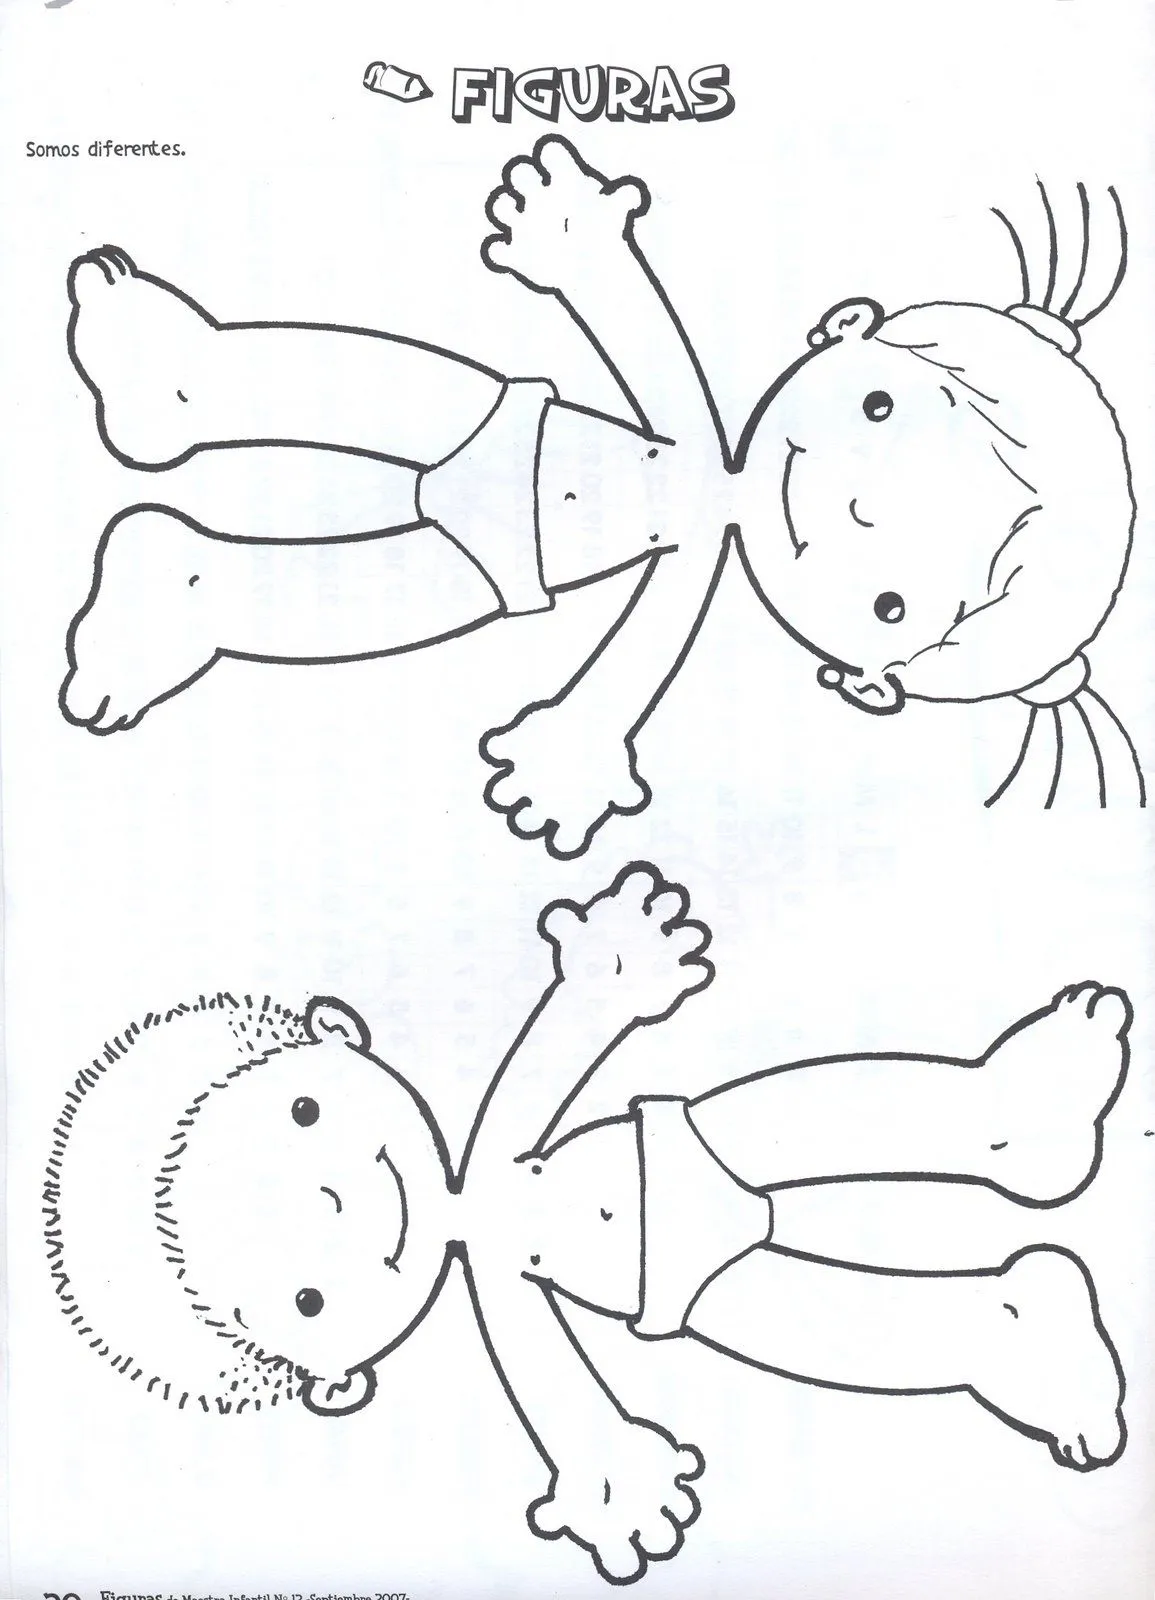 Cuerpo humano dibujo niño - Imagui